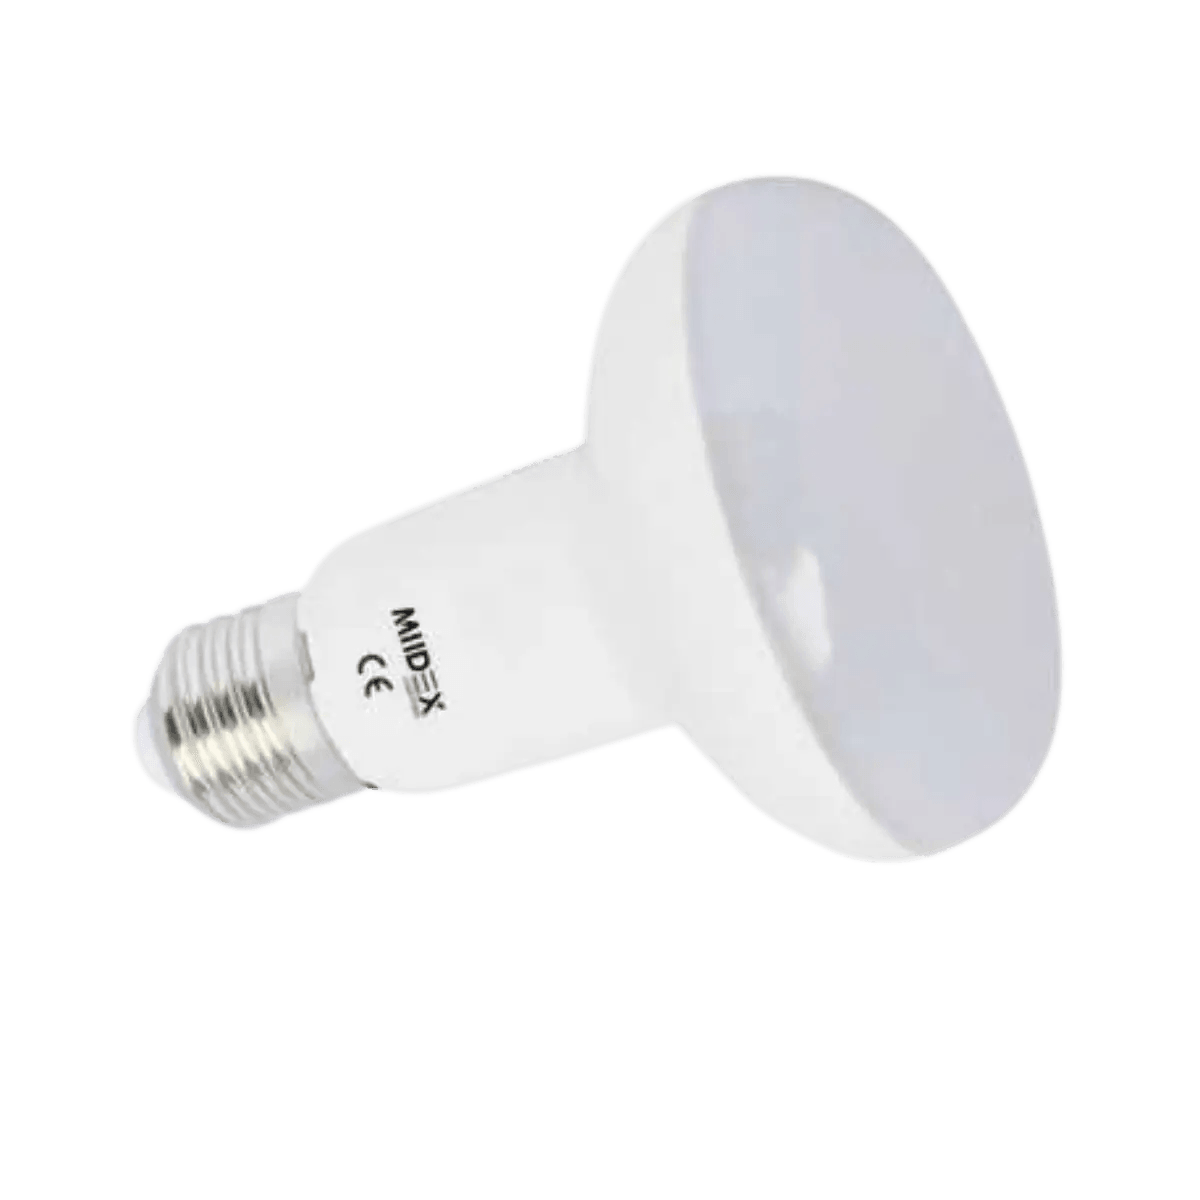 Ampoule LED Proventa® POWER E27 Poire - Lumière blanche chaude - 11W  remplace 75W - 6